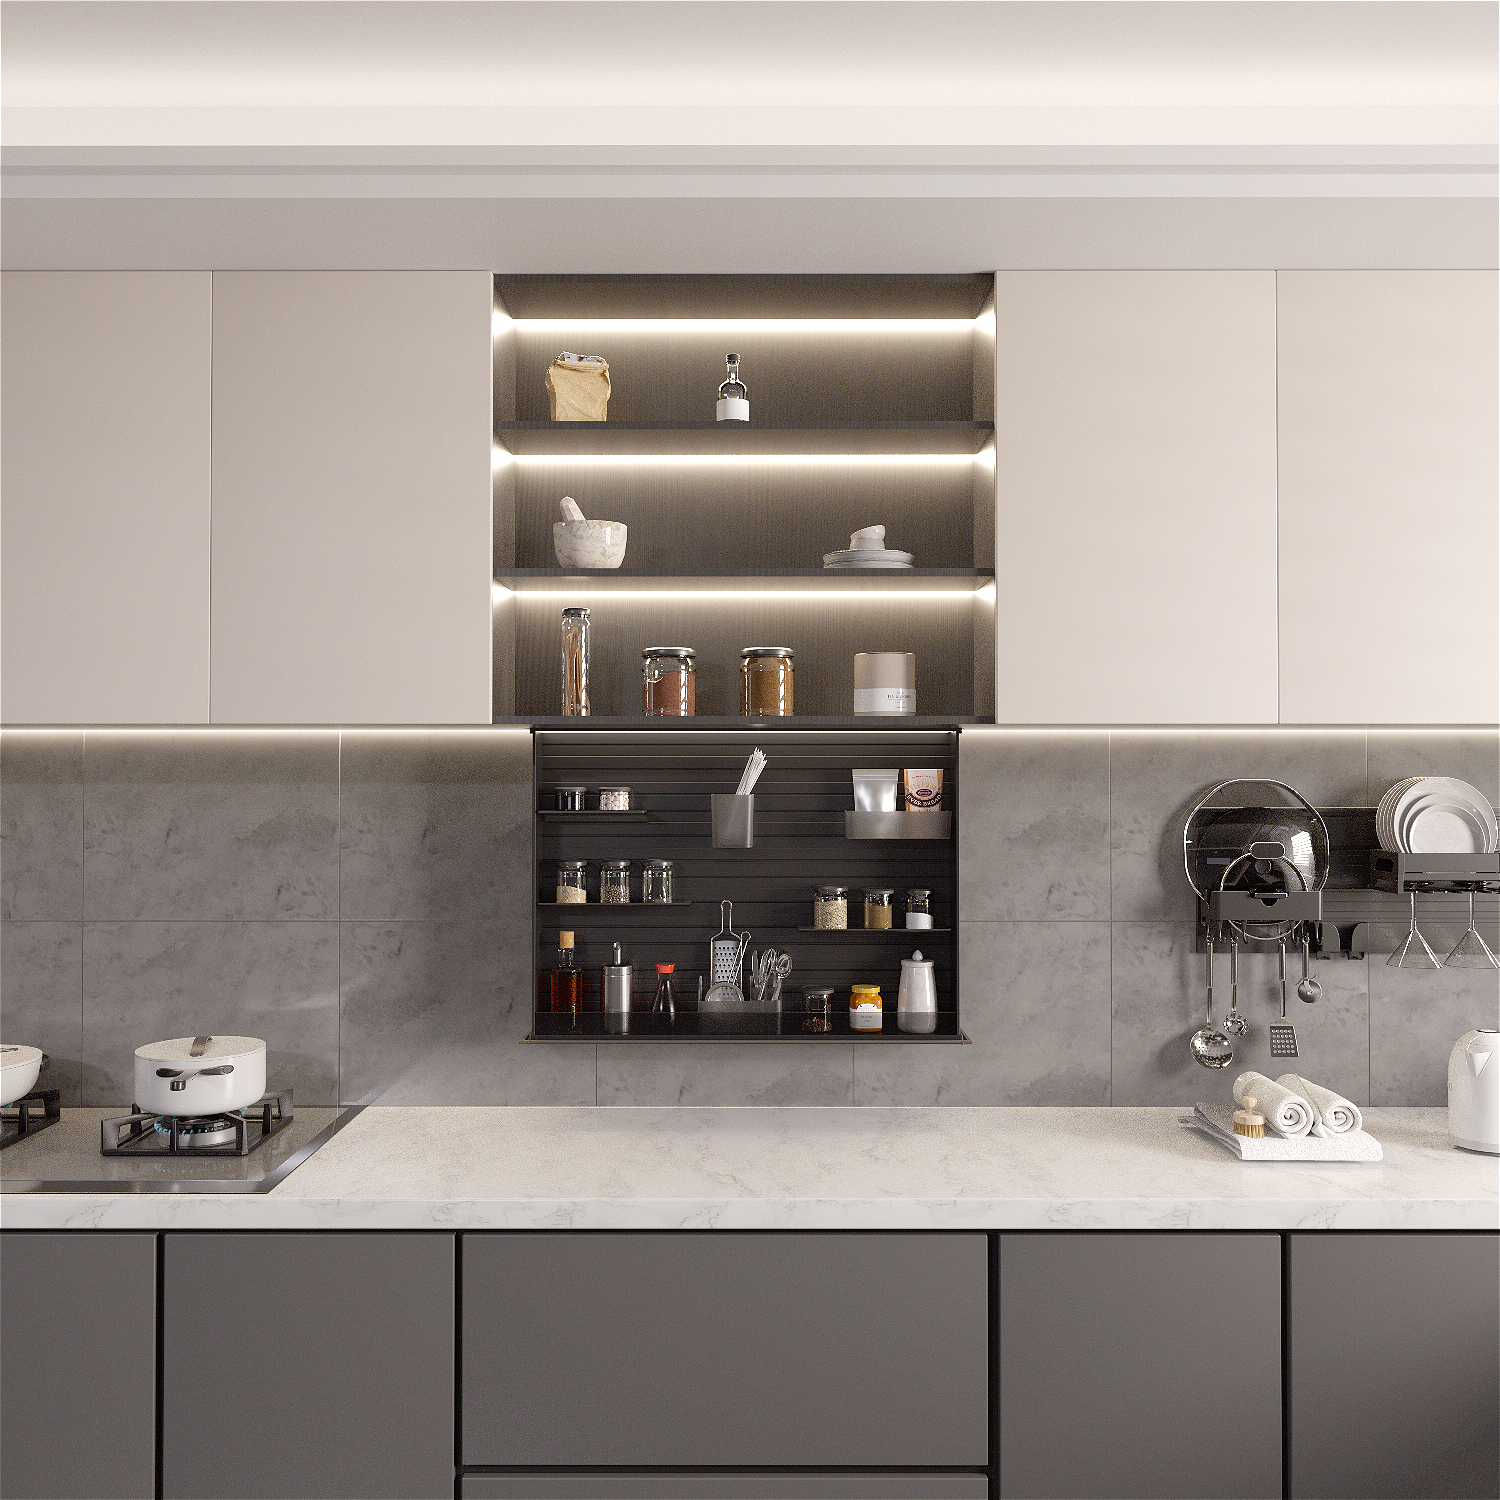 I-TianMa Ultra-thin Kitchen Smart Lifting